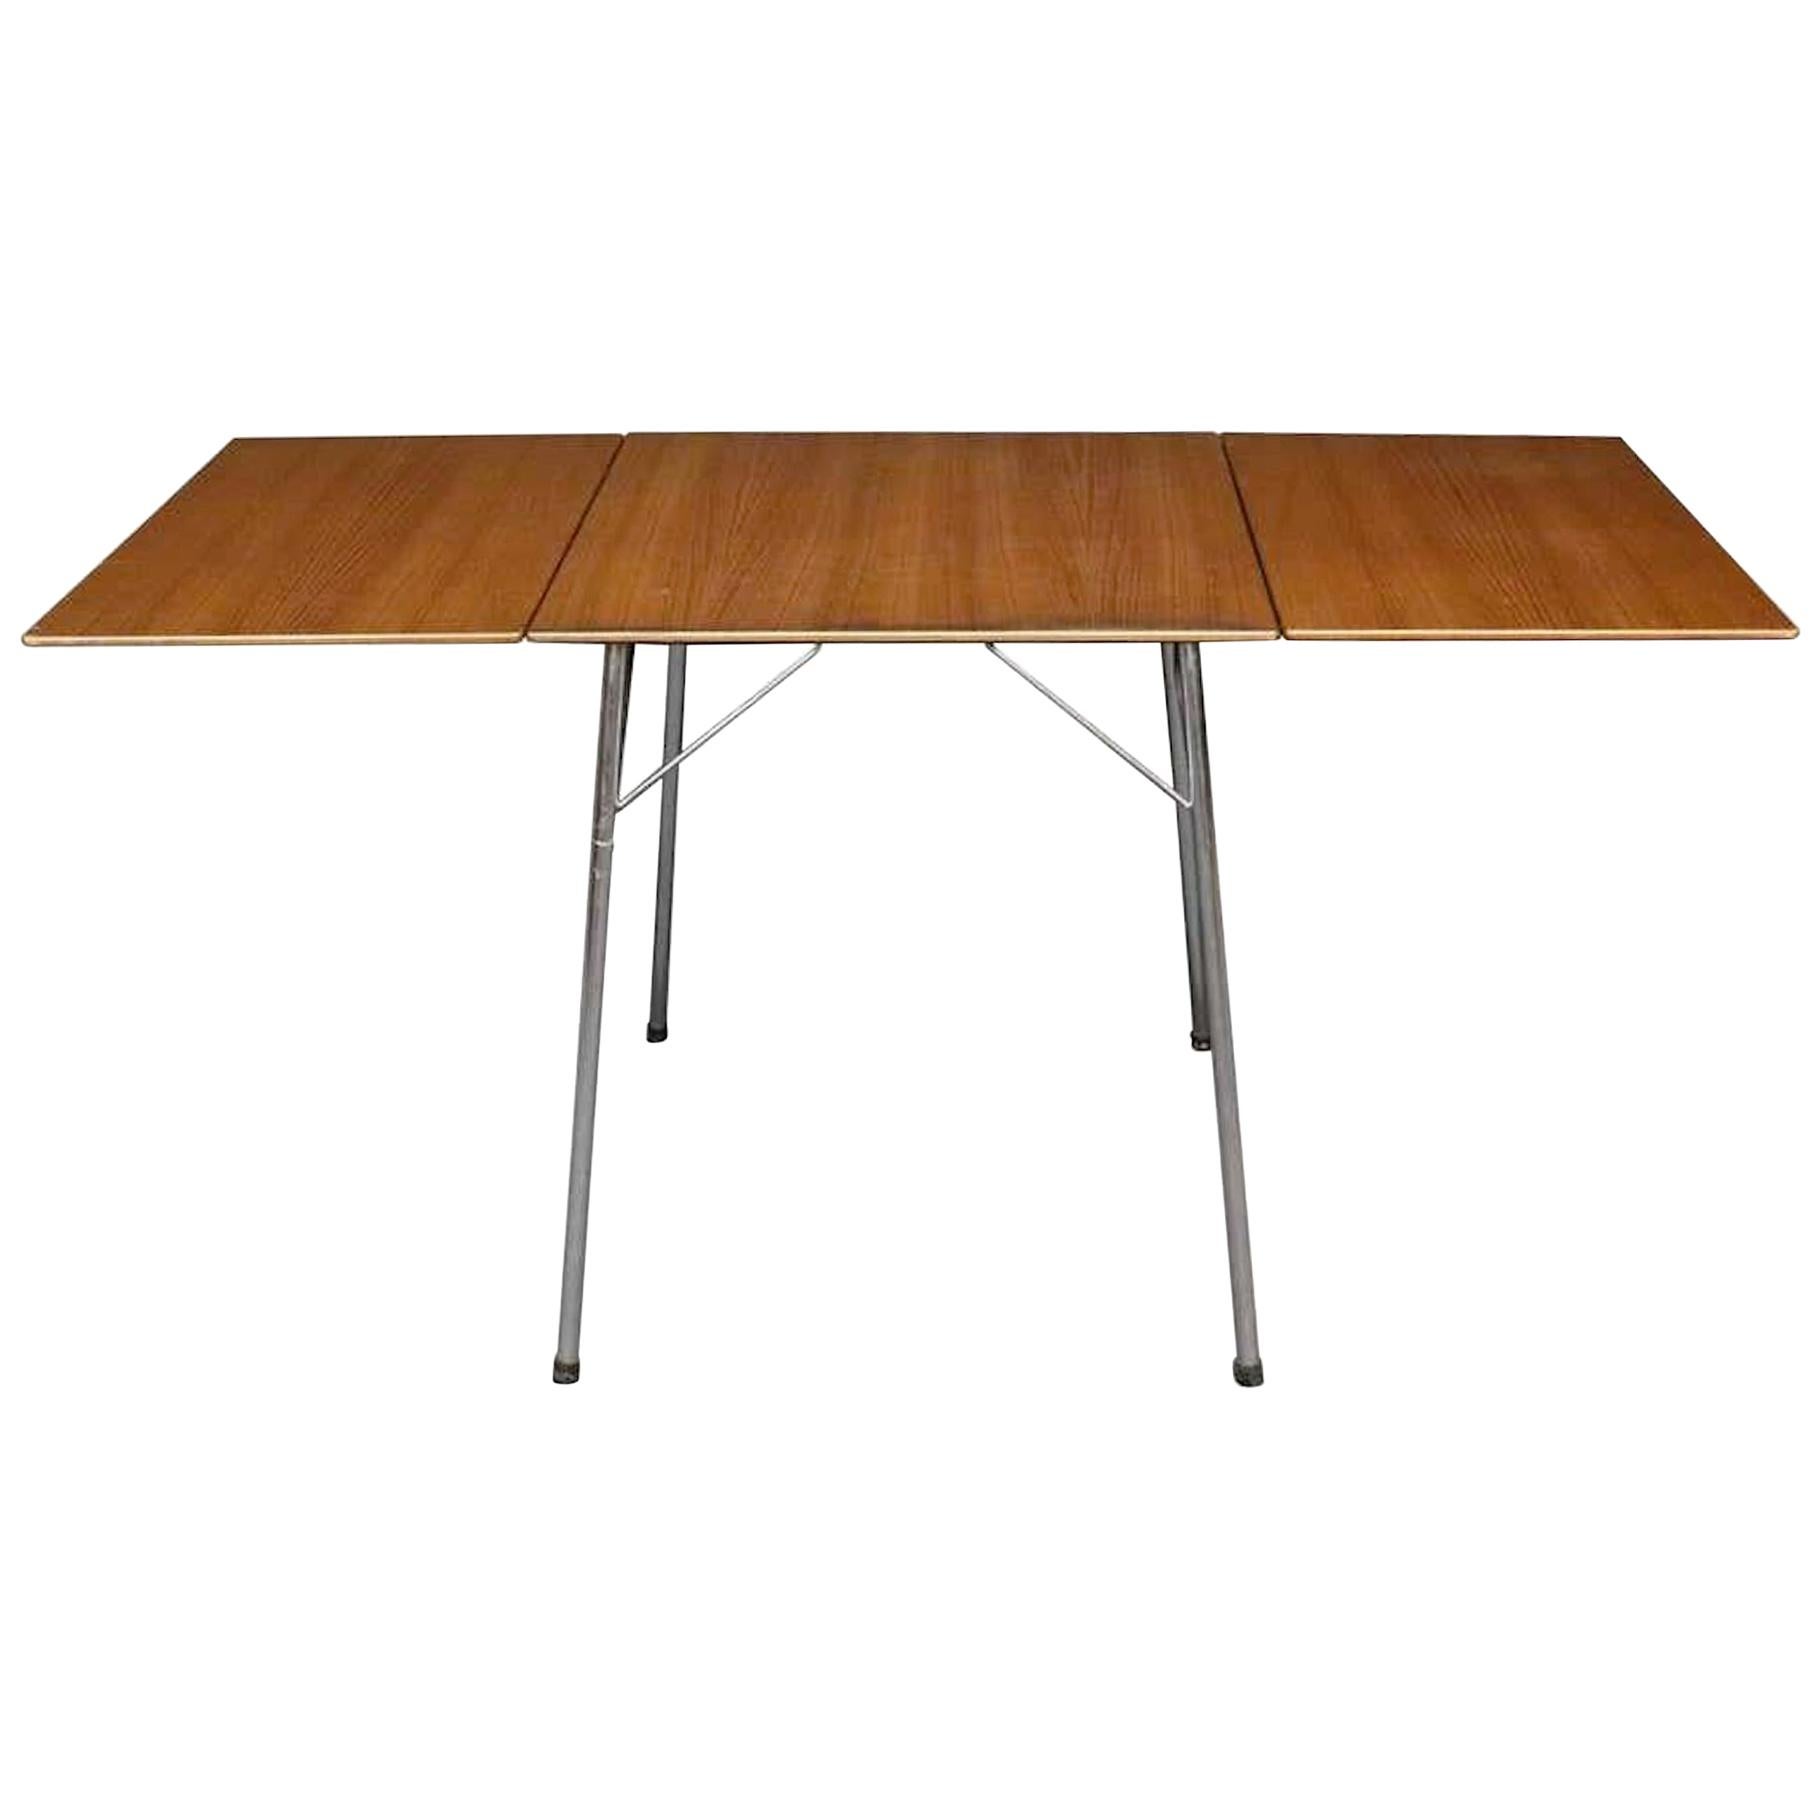 Arne Jacobsen Table